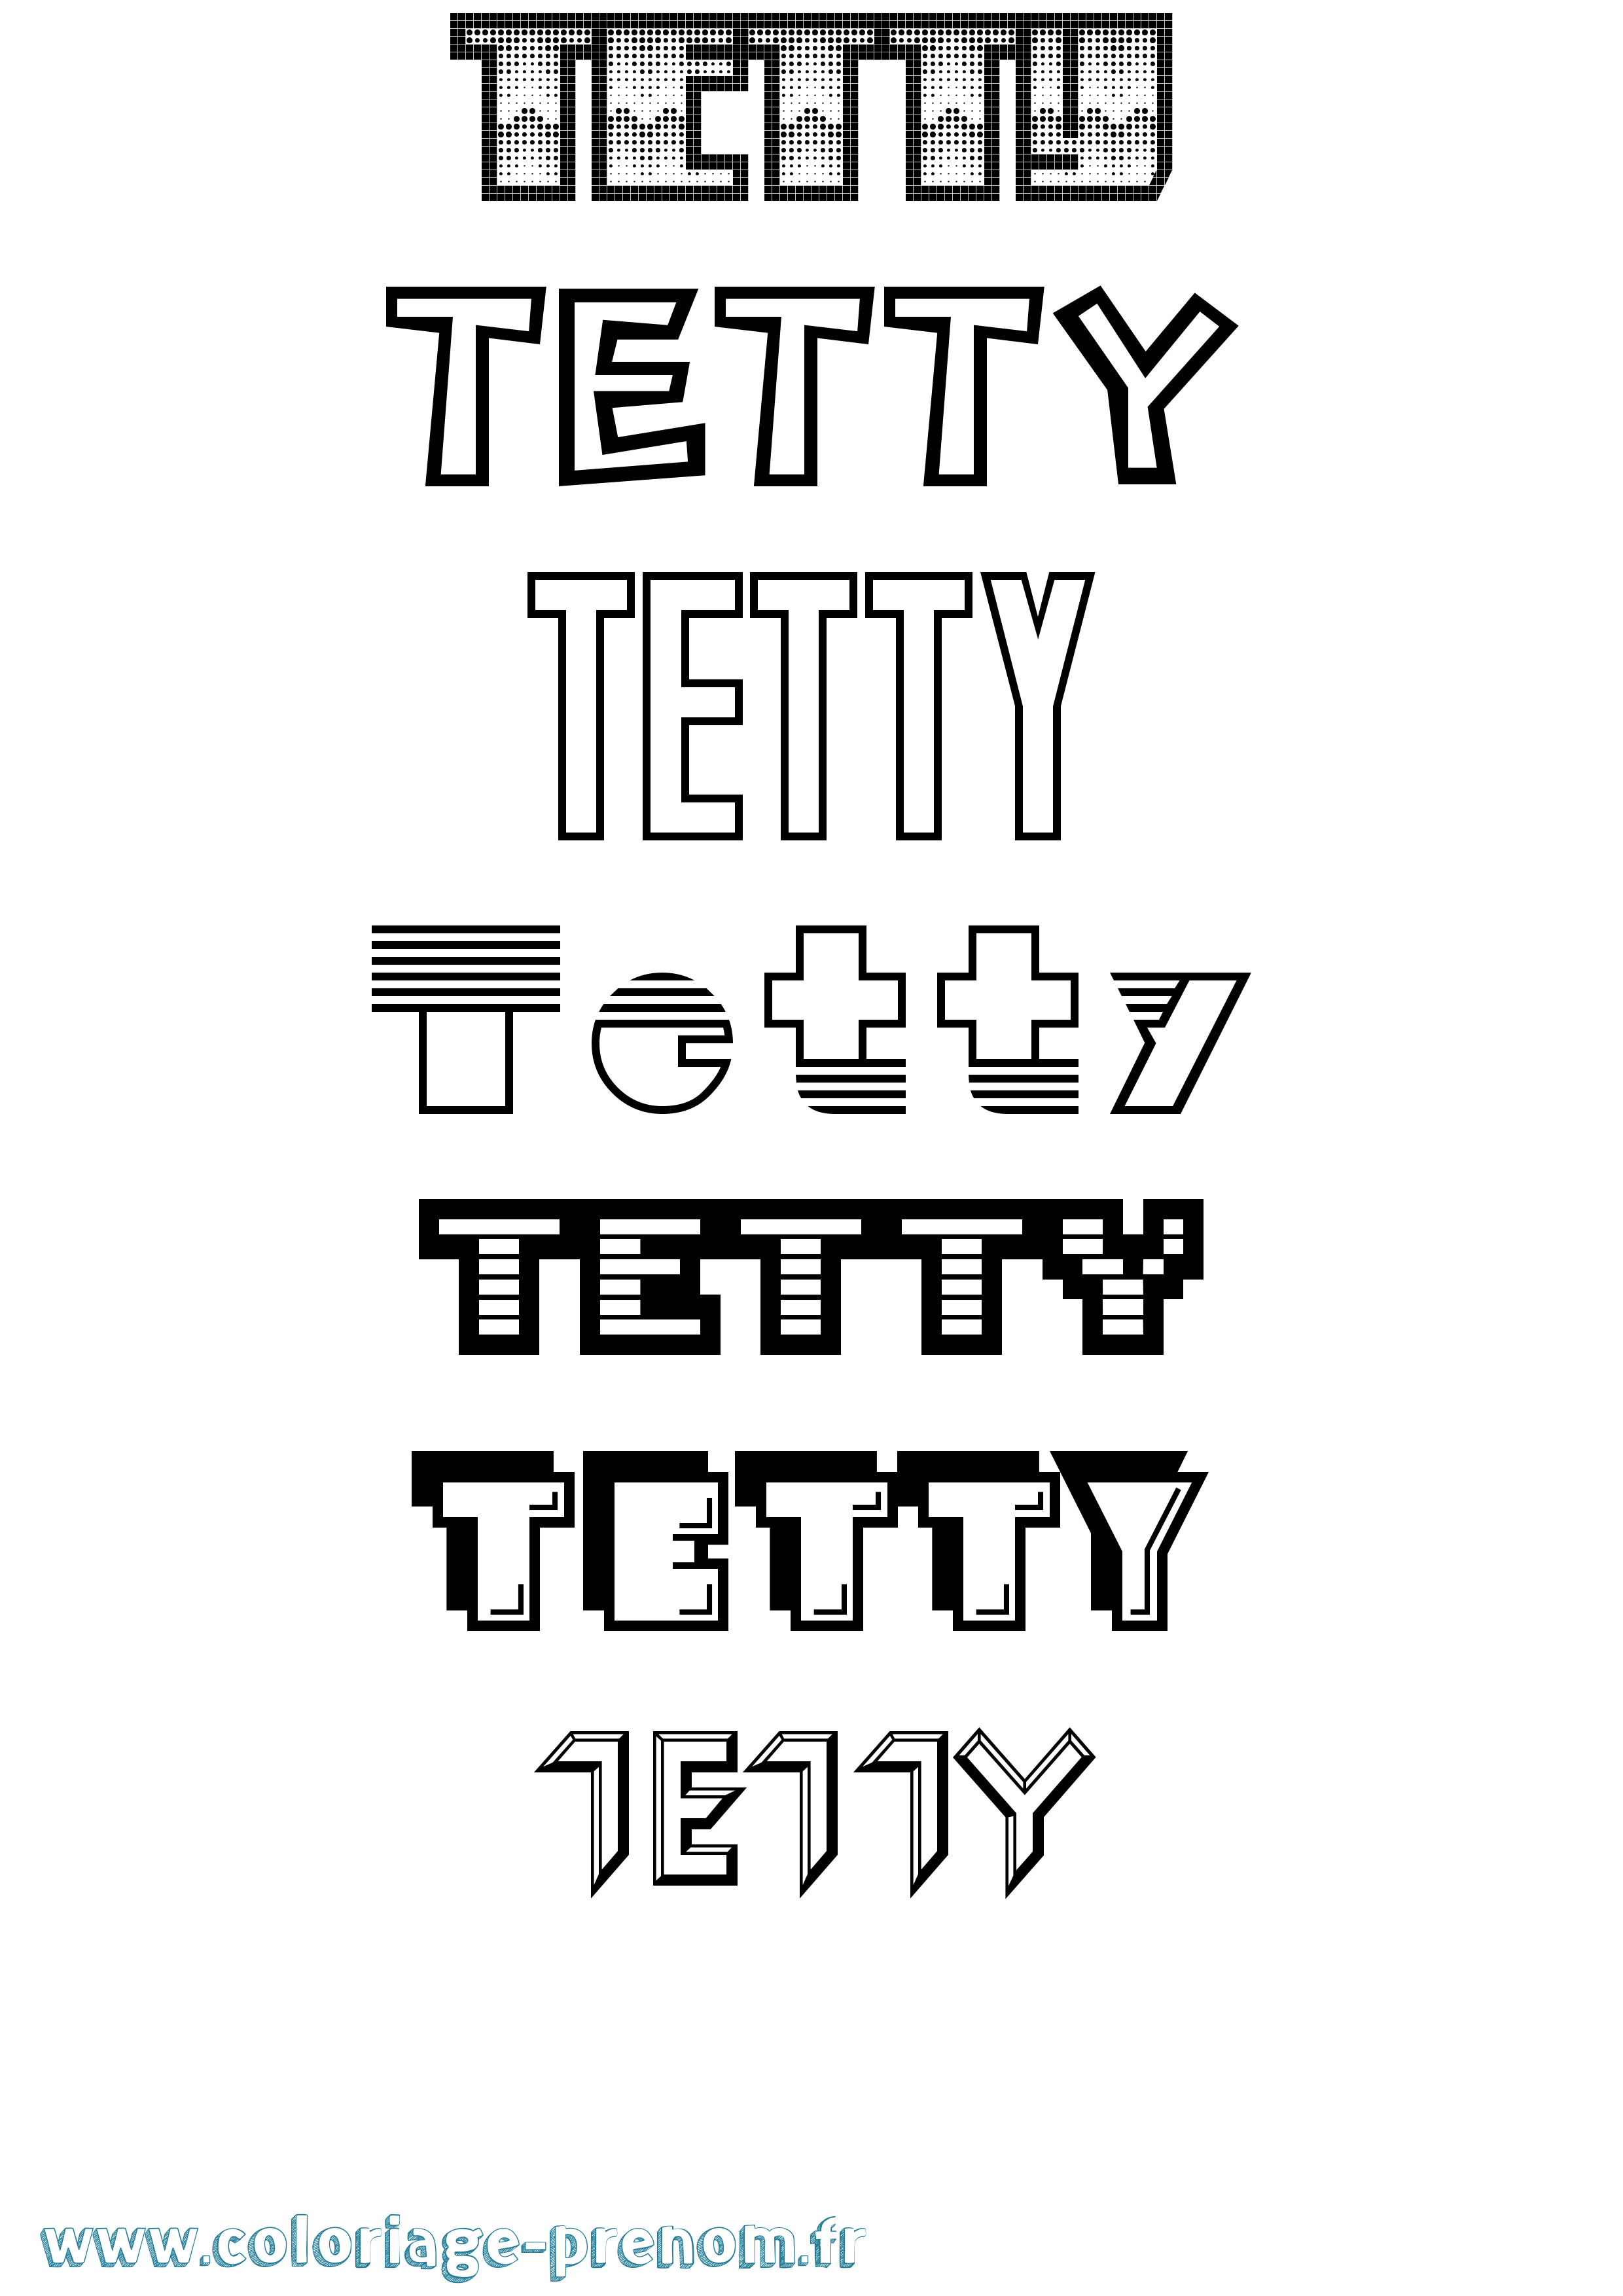 Coloriage prénom Tetty Jeux Vidéos